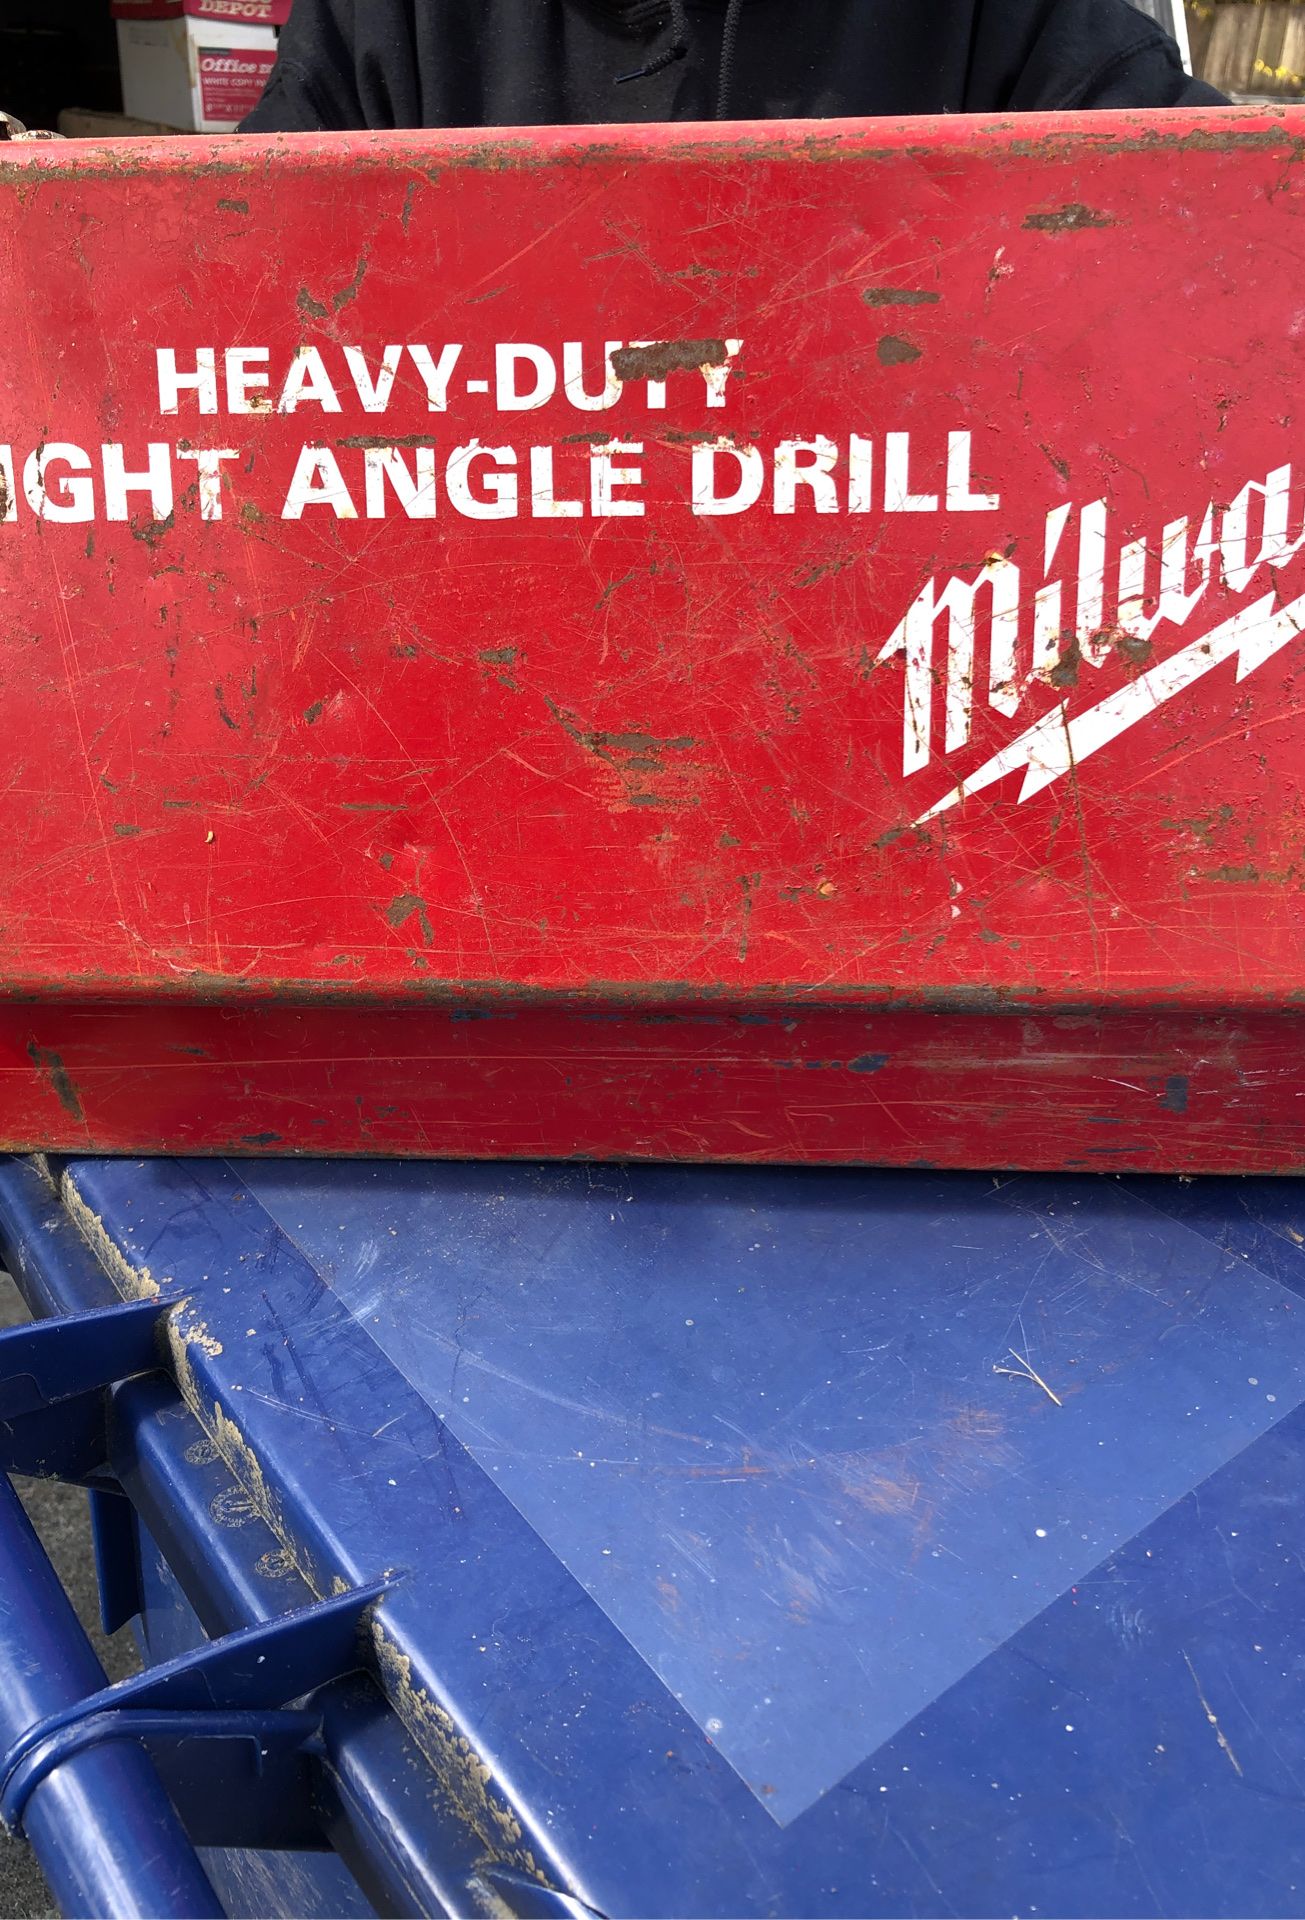 Heavy duty right angle drill